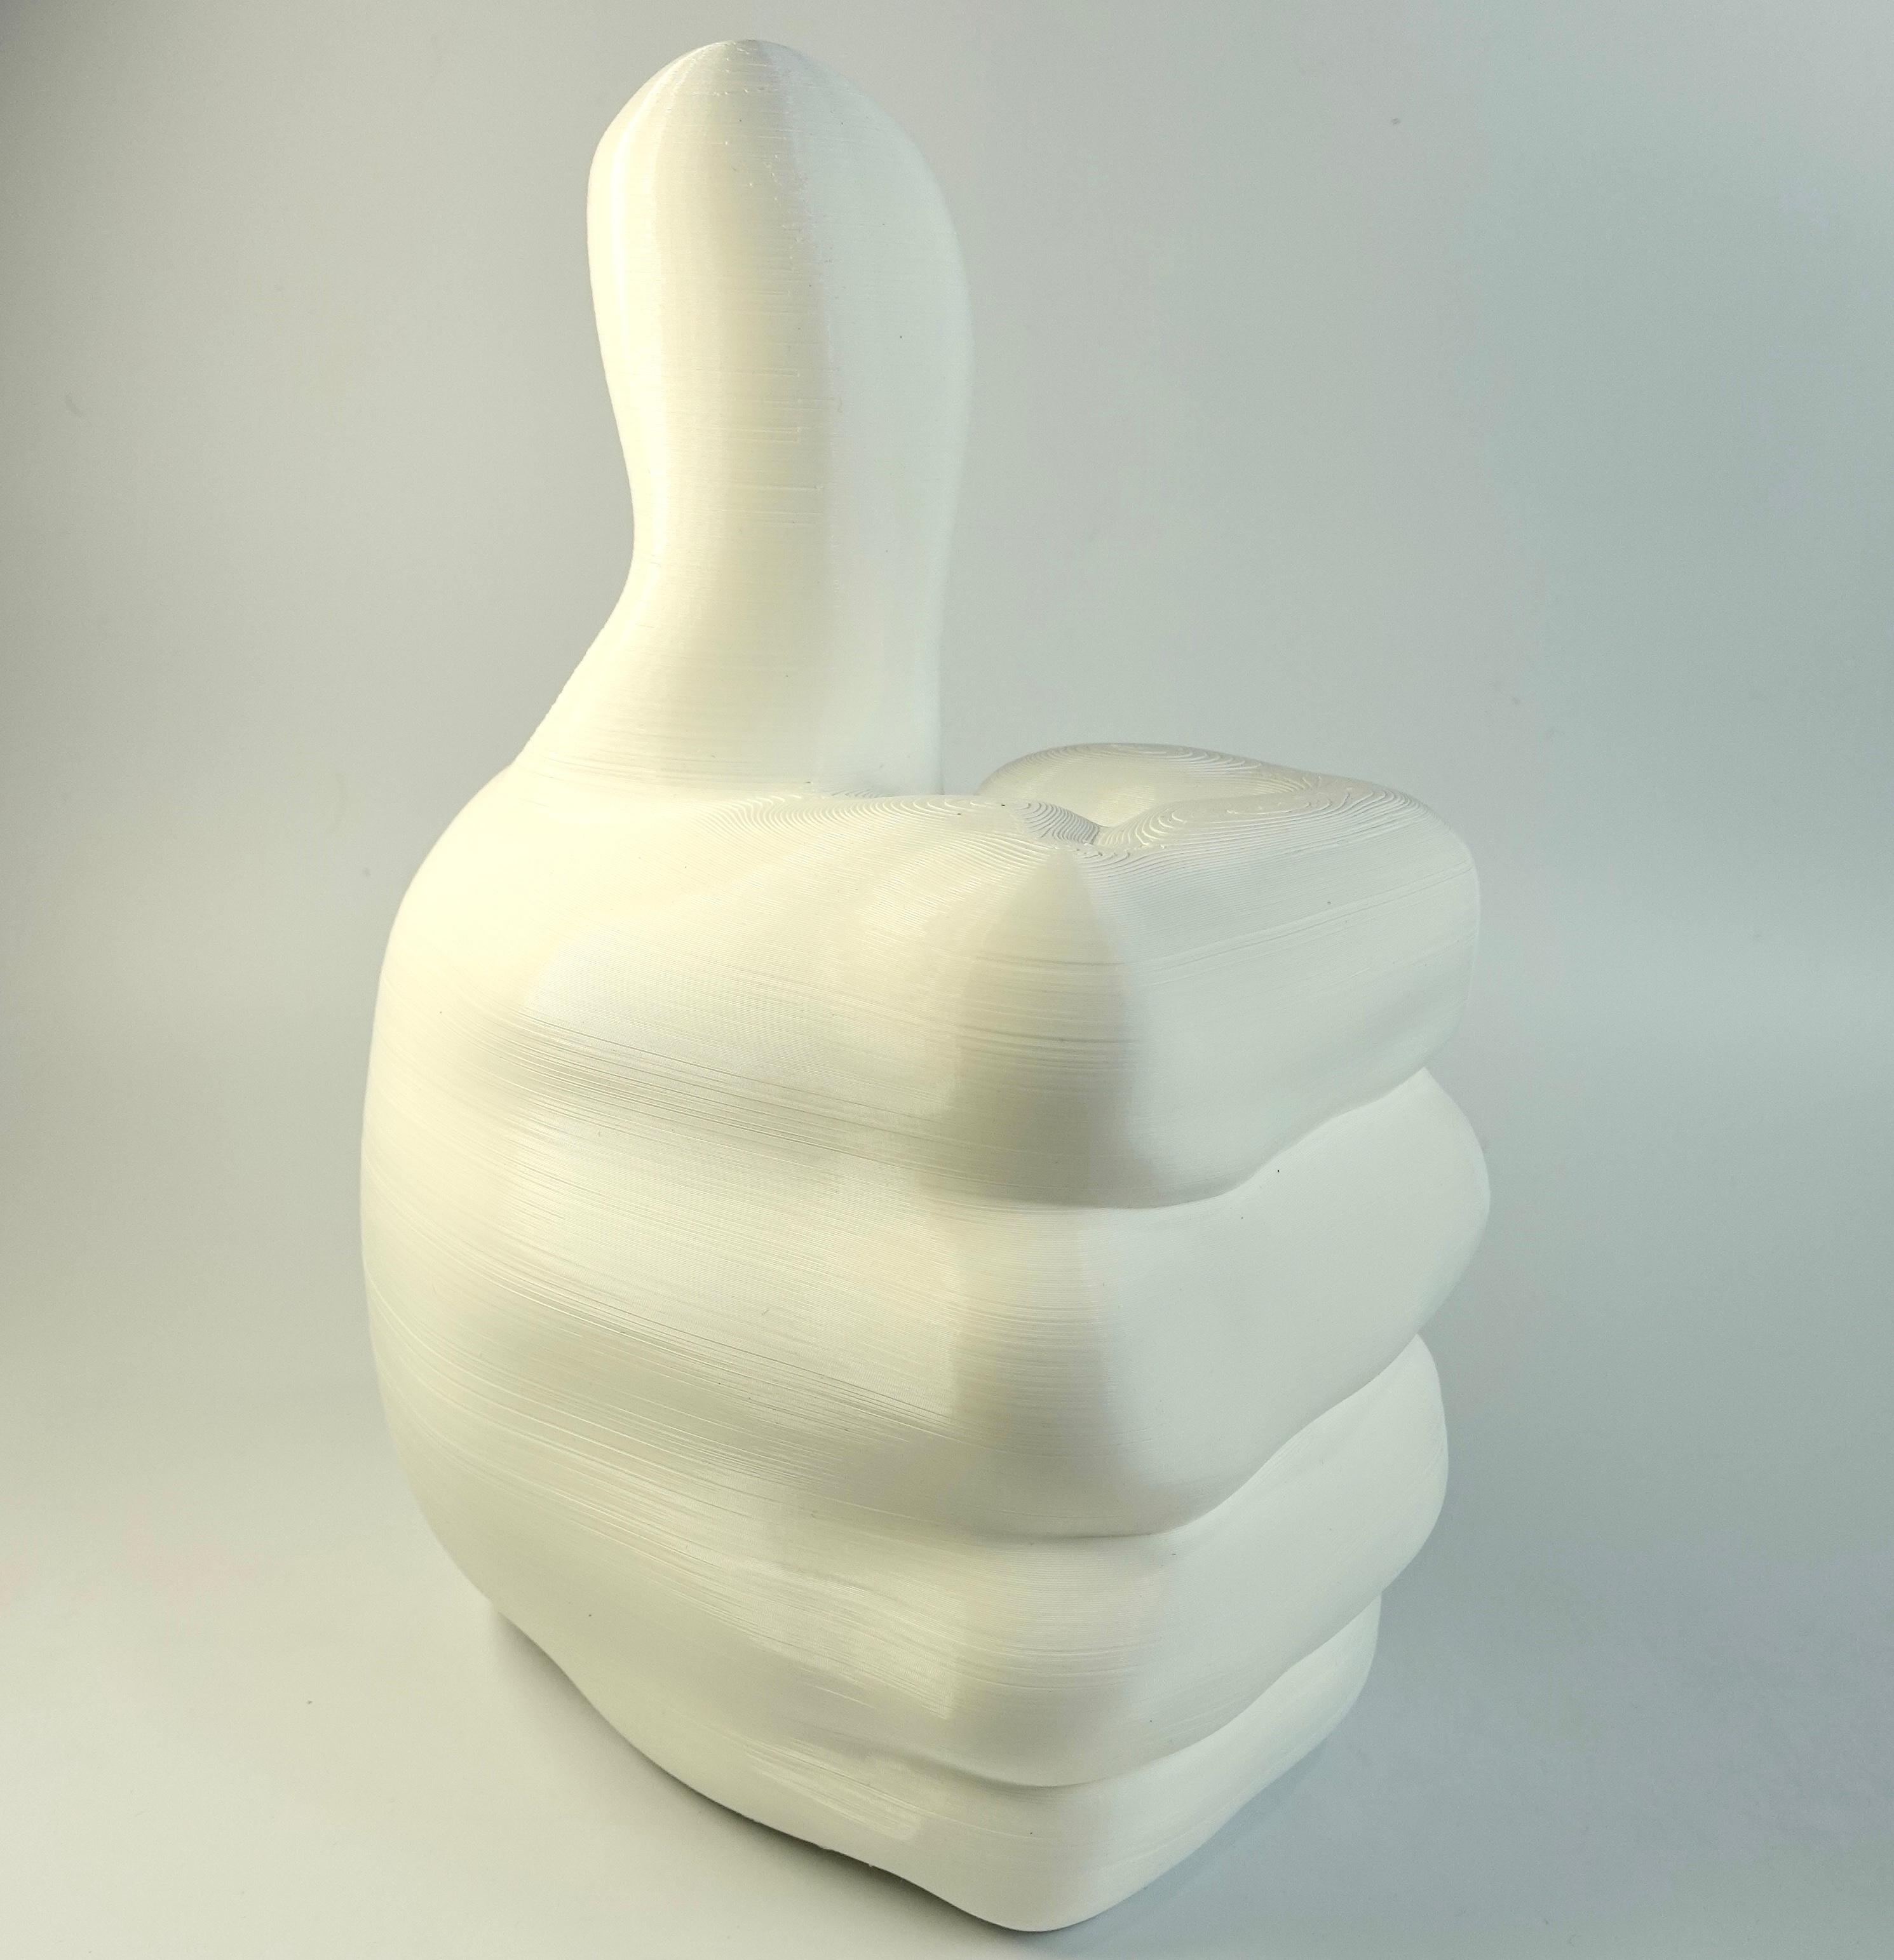 Thumbs Up 3d model